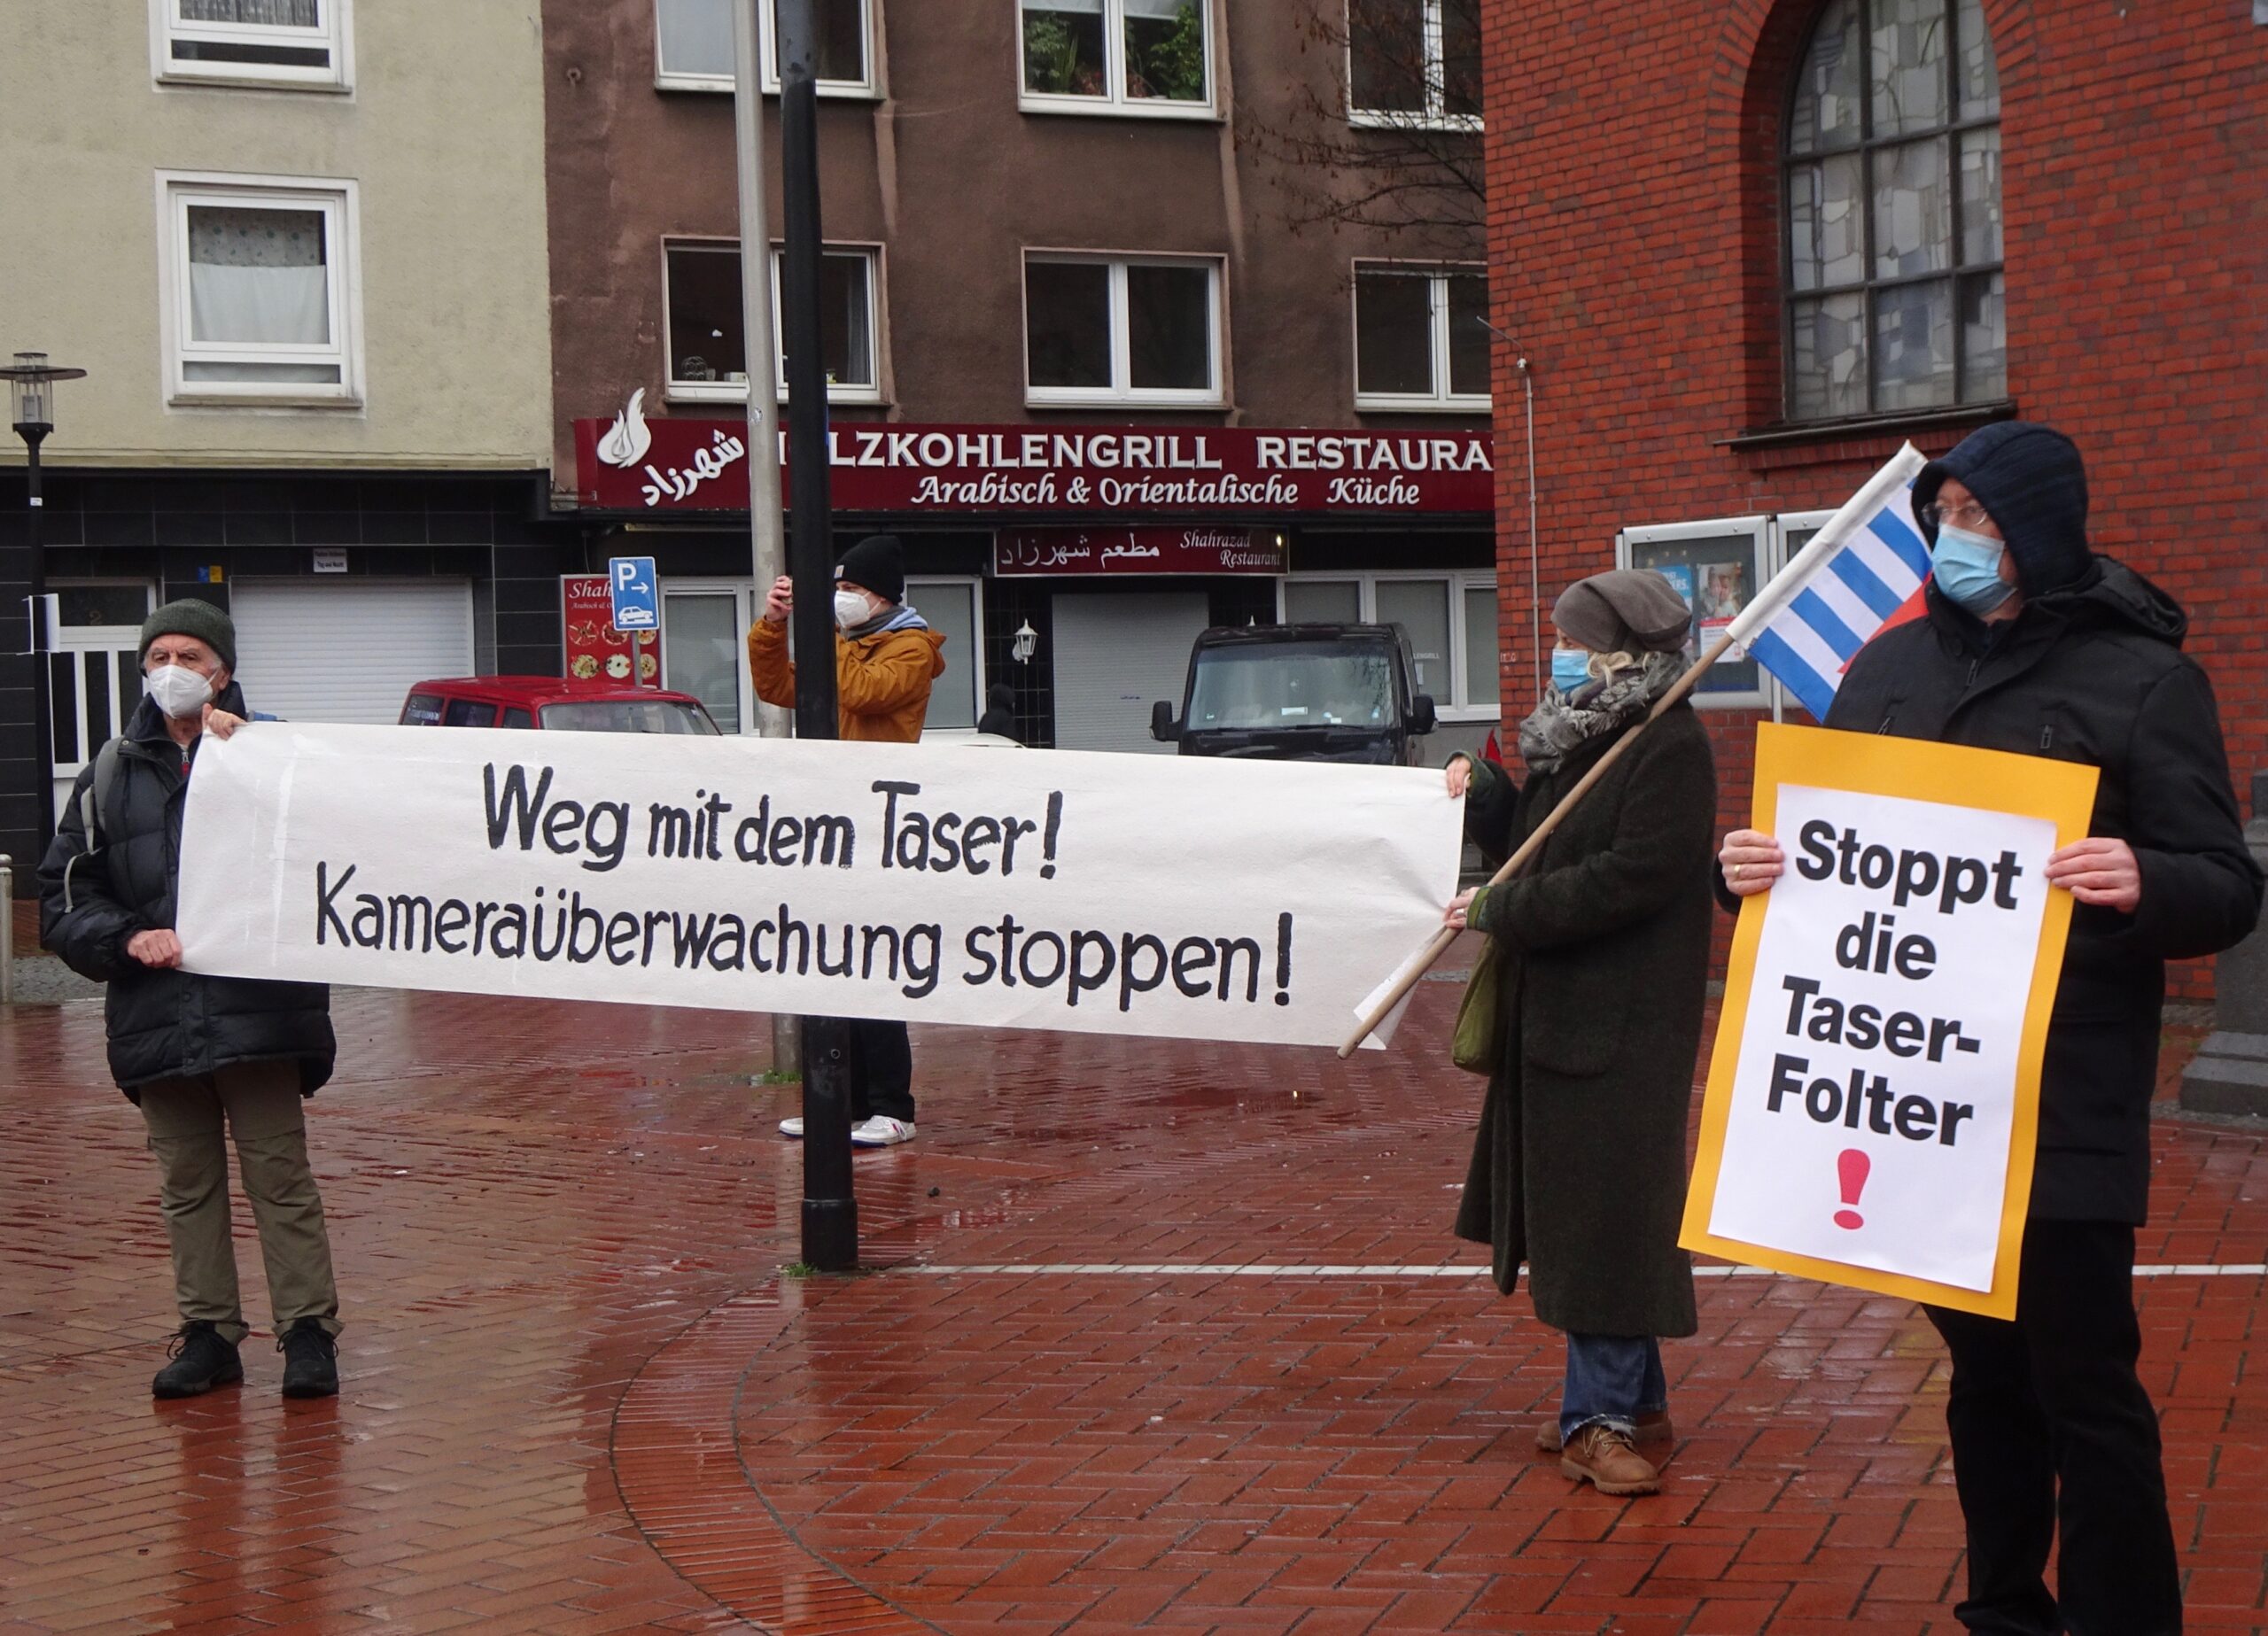 DSC01462 scaled - Proteste gegen die Ausrüstung der Polizei mit Tasern in Dortmund - Aufrüstung, Polizei, Proteste - Blog